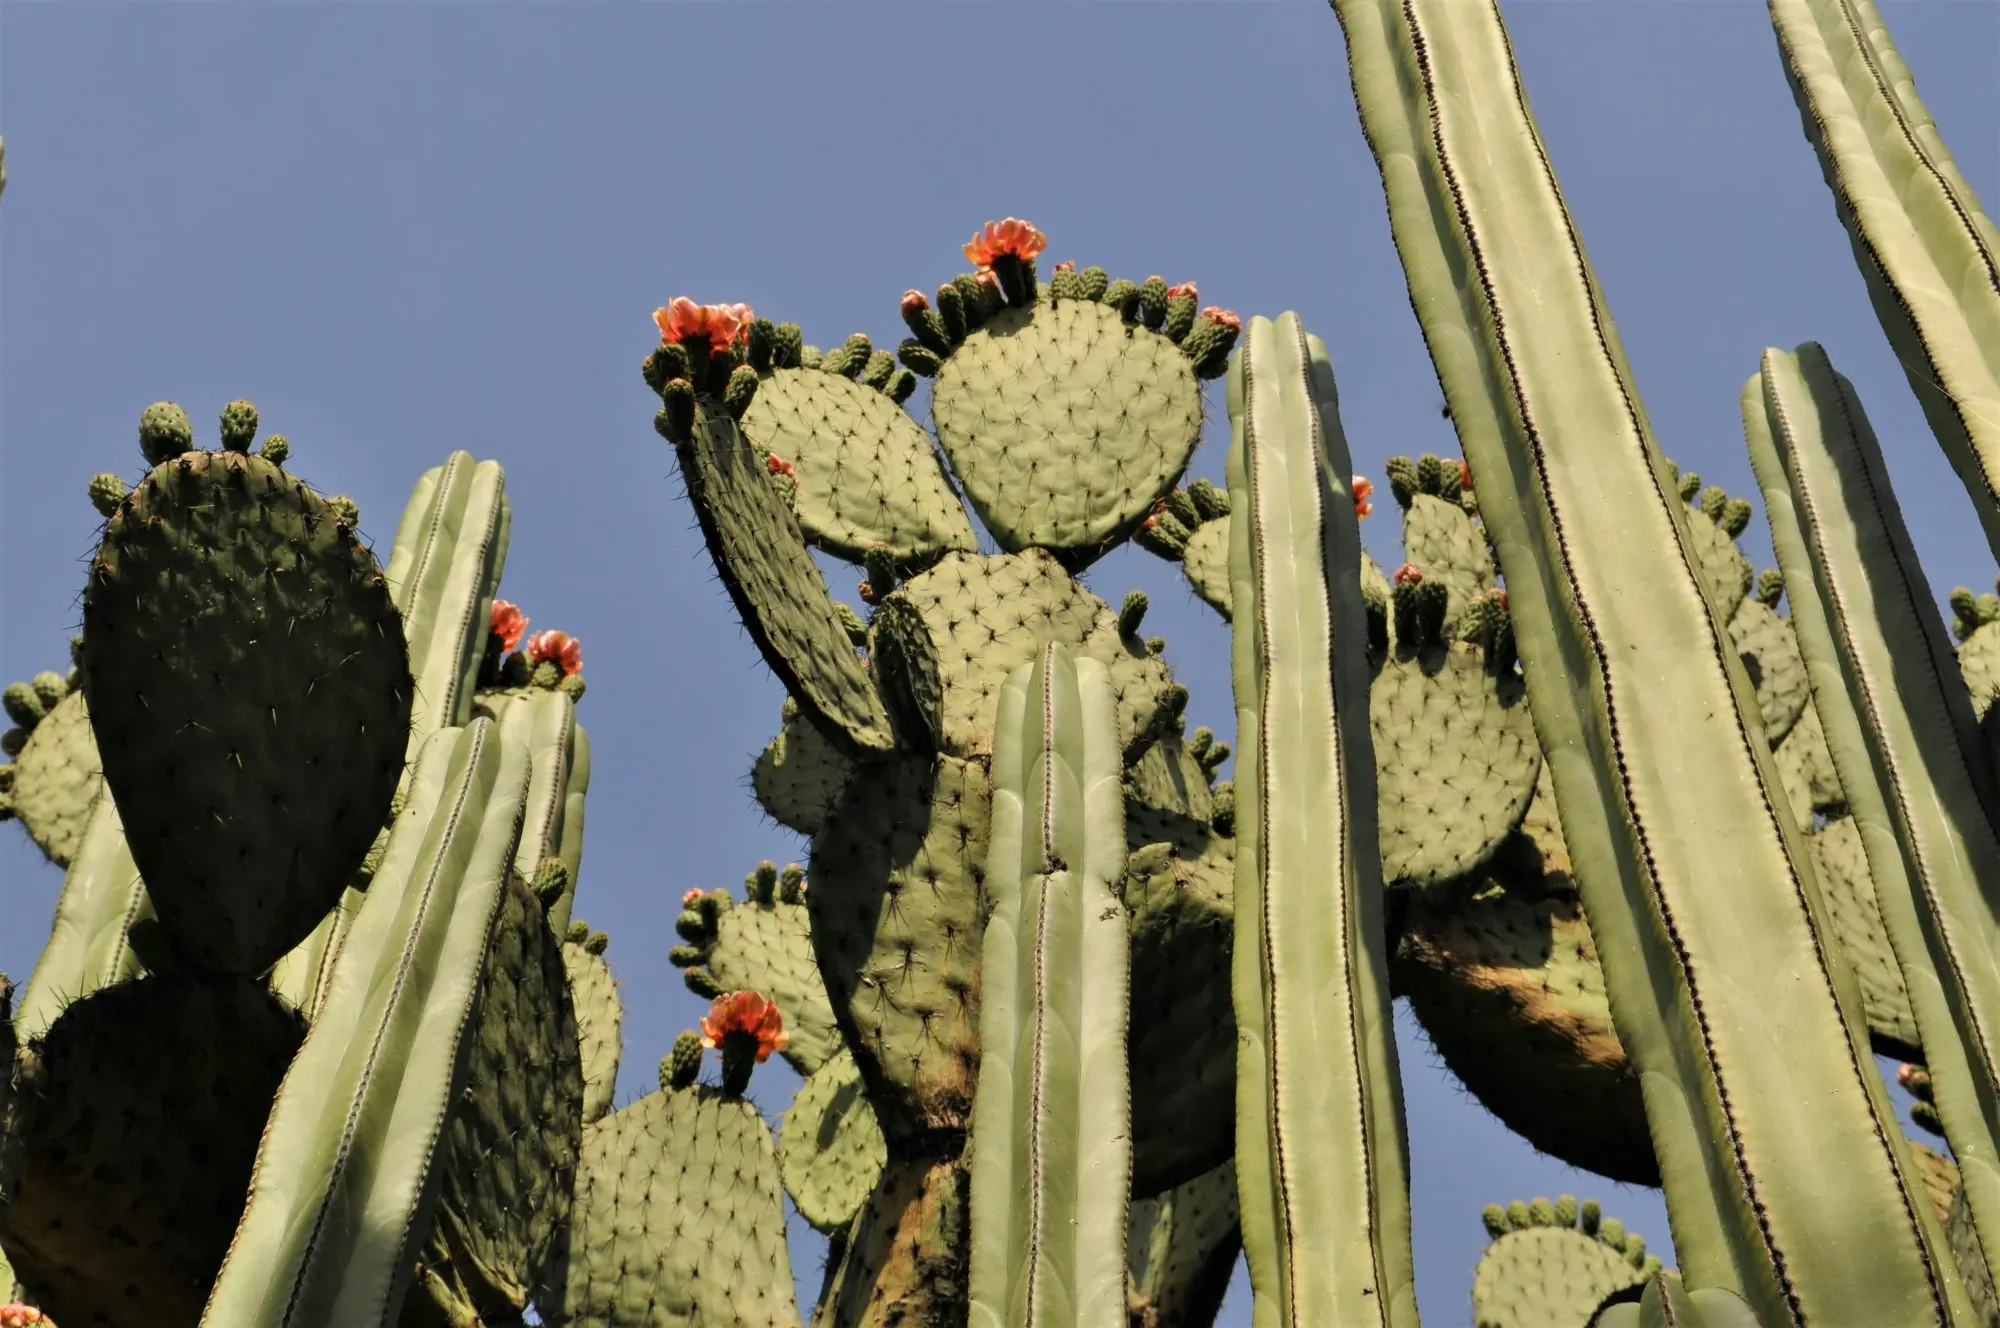 Cactus ad Oaxaca